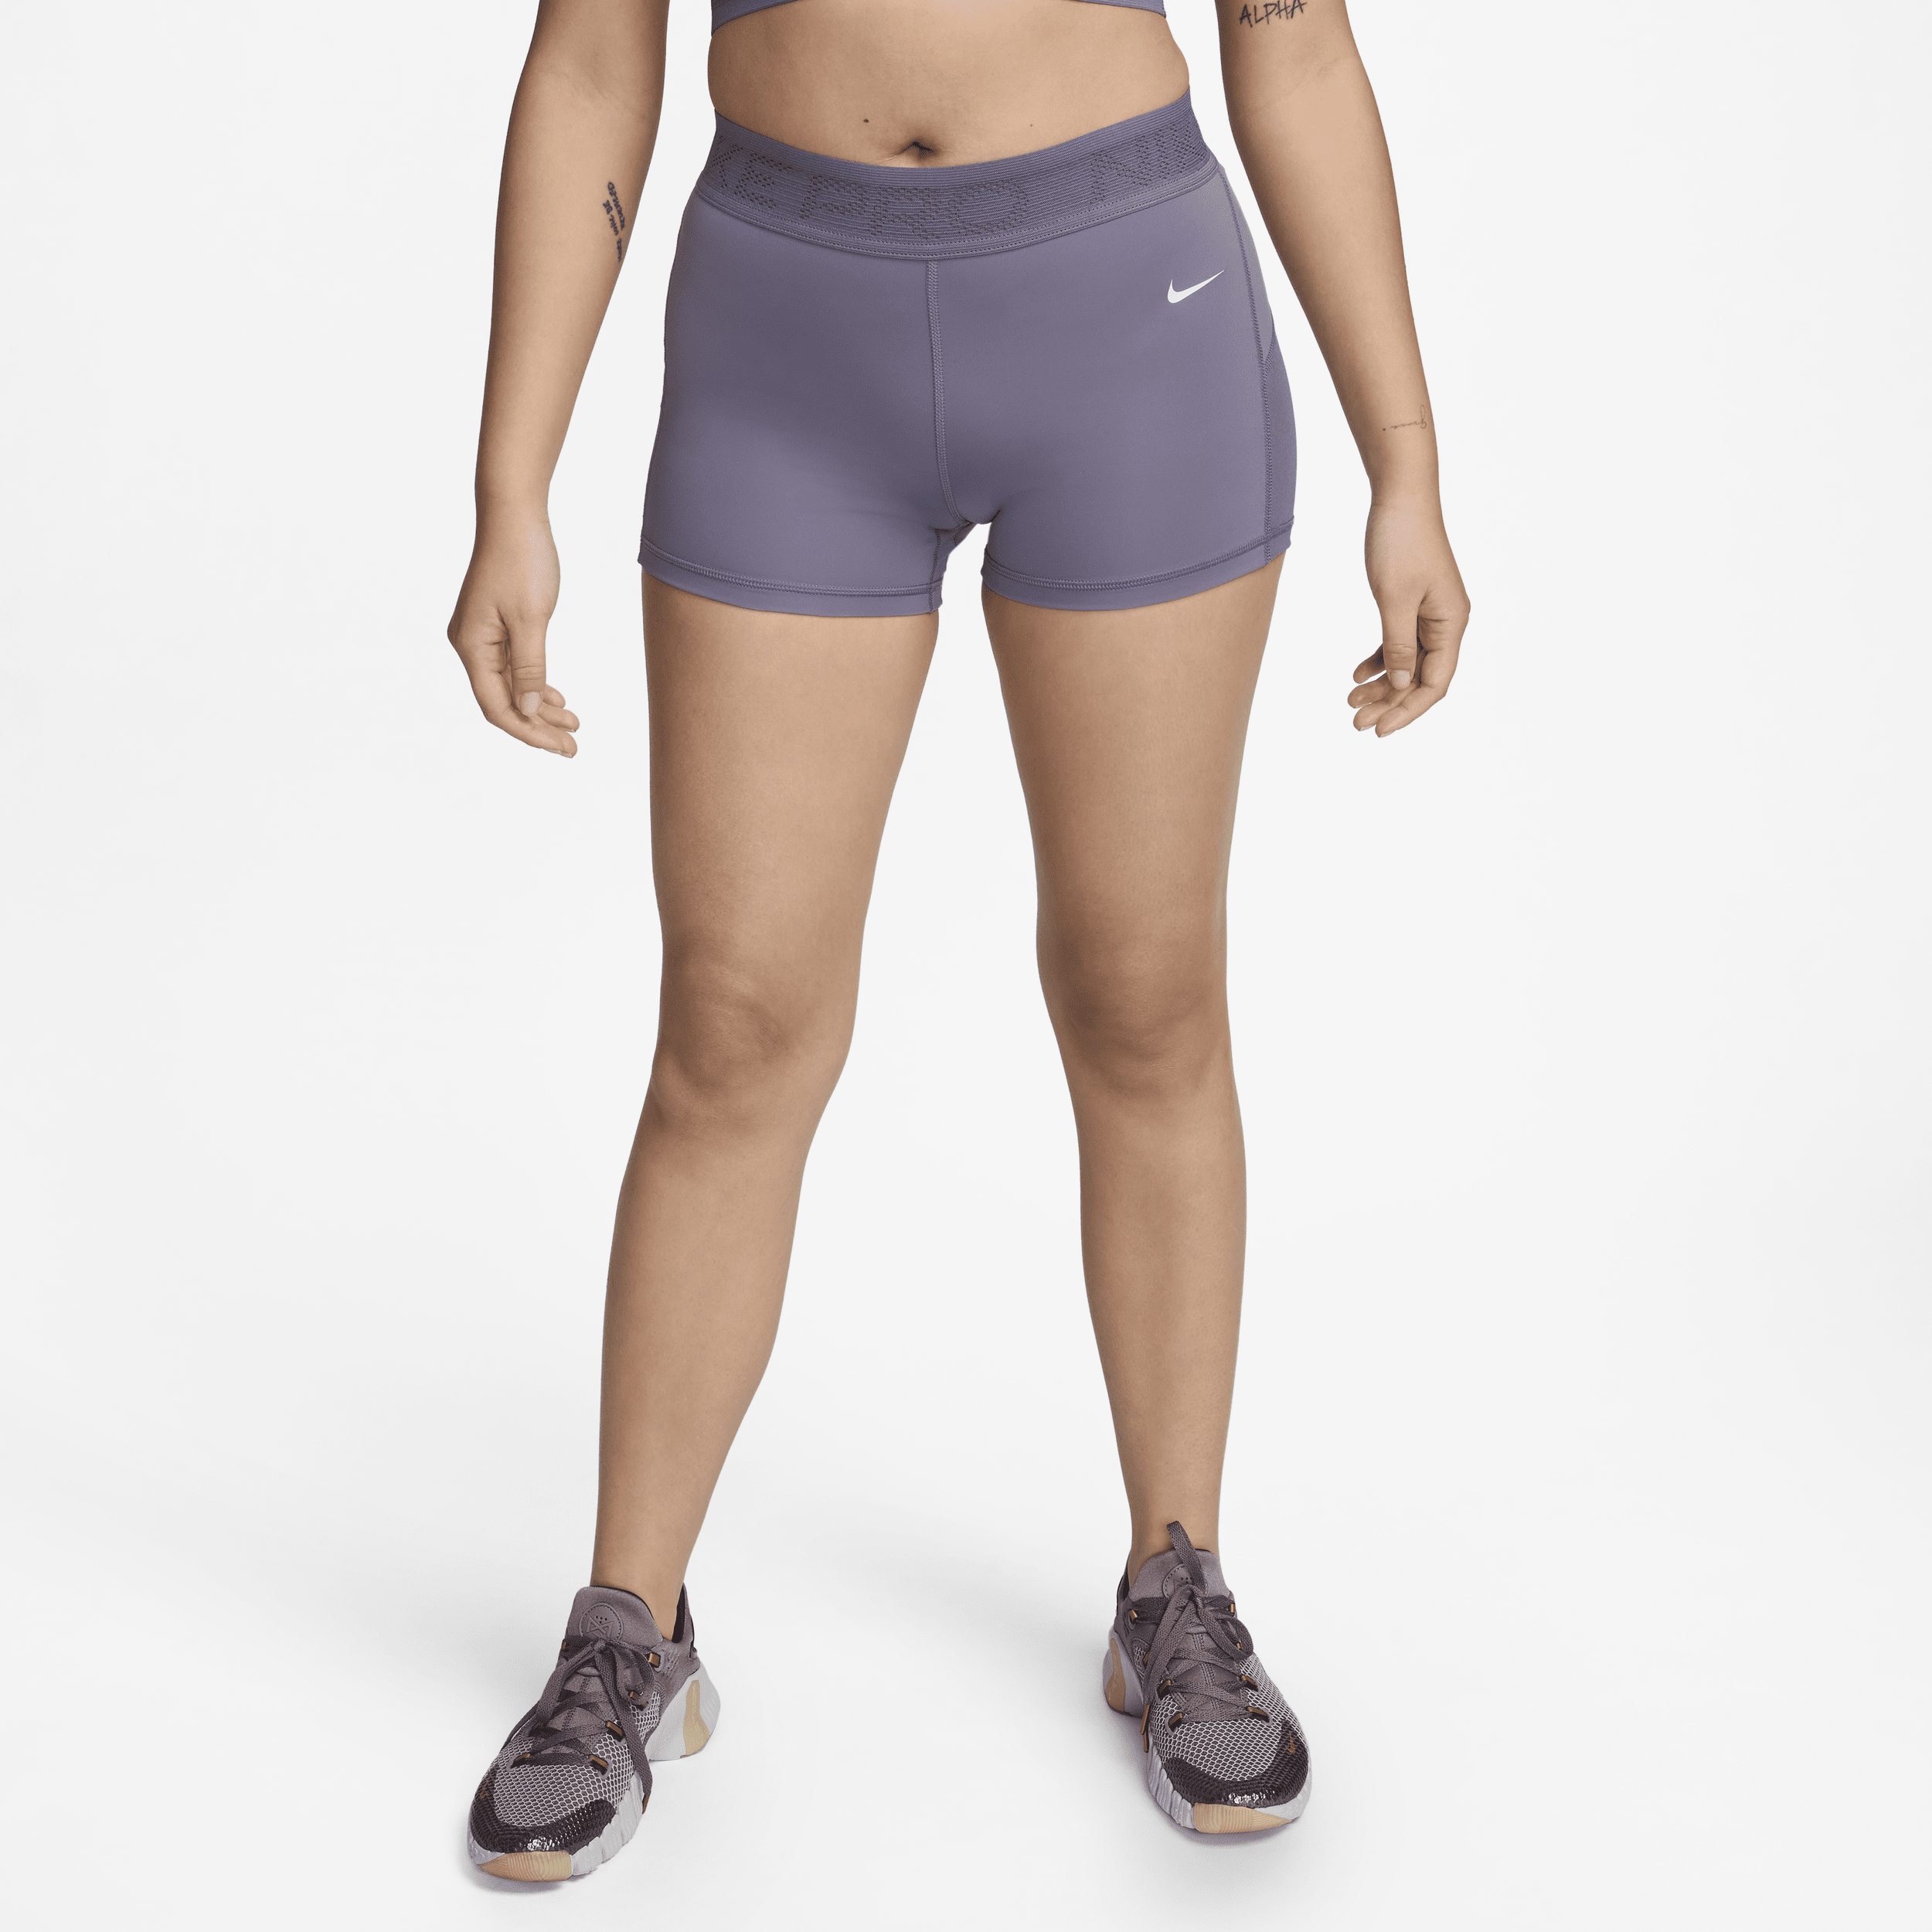 Shorts a vita media con inserti in mesh 8 cm Nike Pro – Donna - Viola